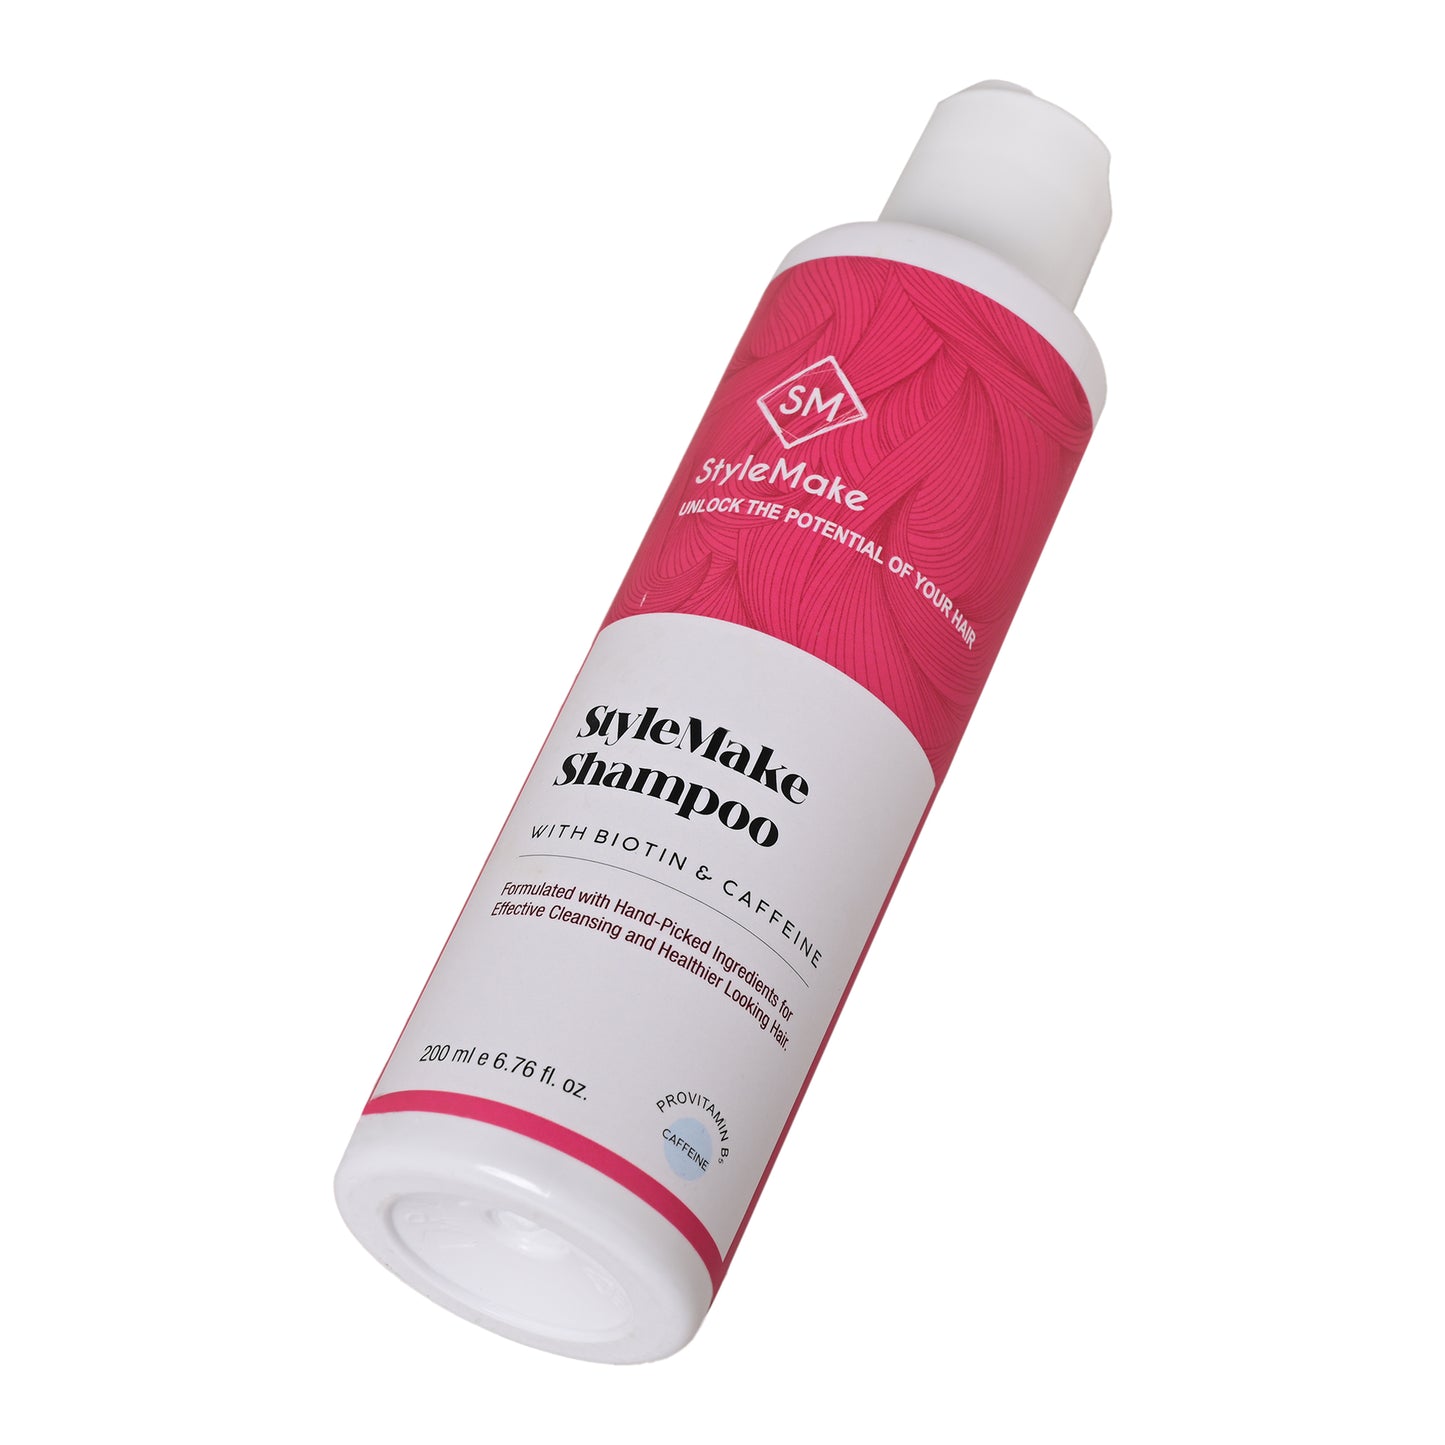 StyleMake Thick Shampoo With Biotin & Caffeine | 200 ml